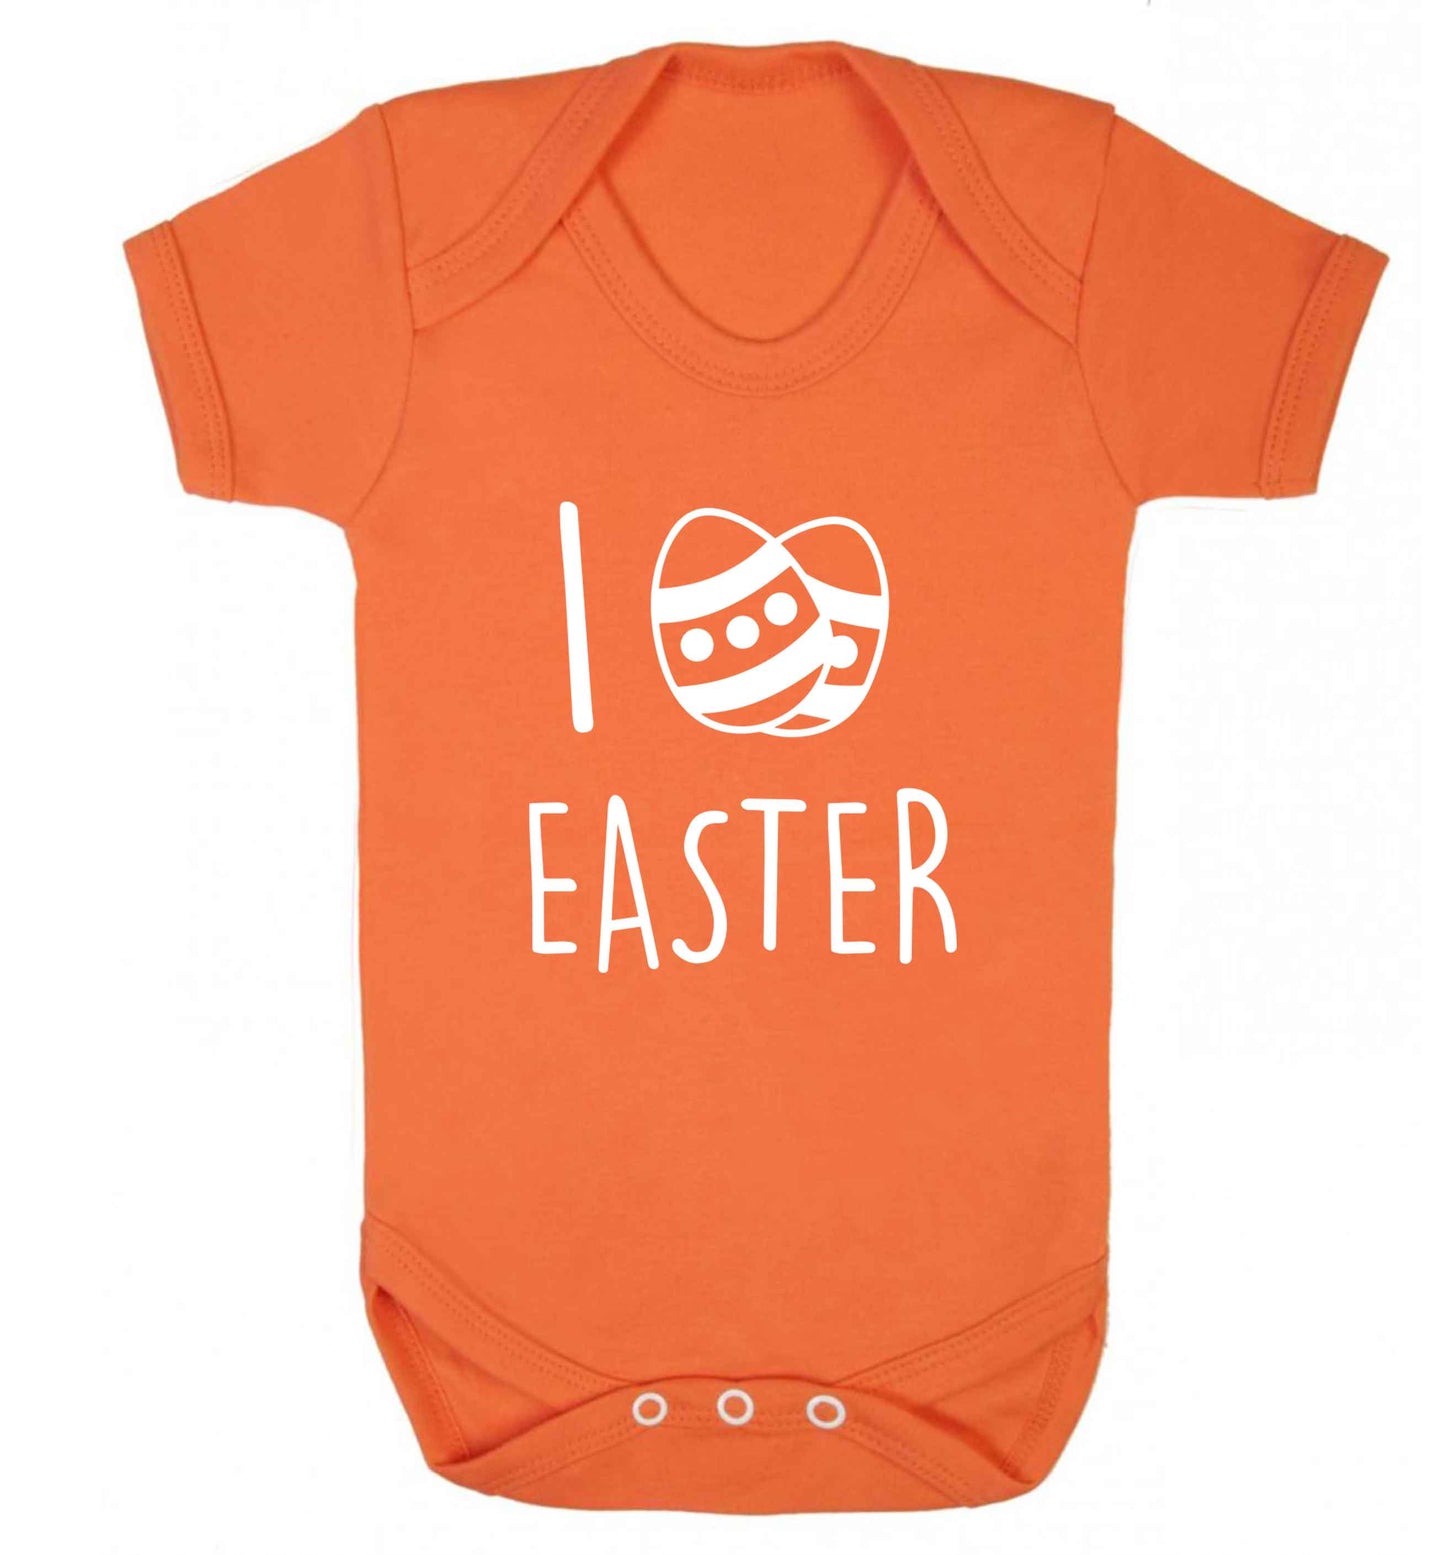 I love Easter baby vest orange 18-24 months